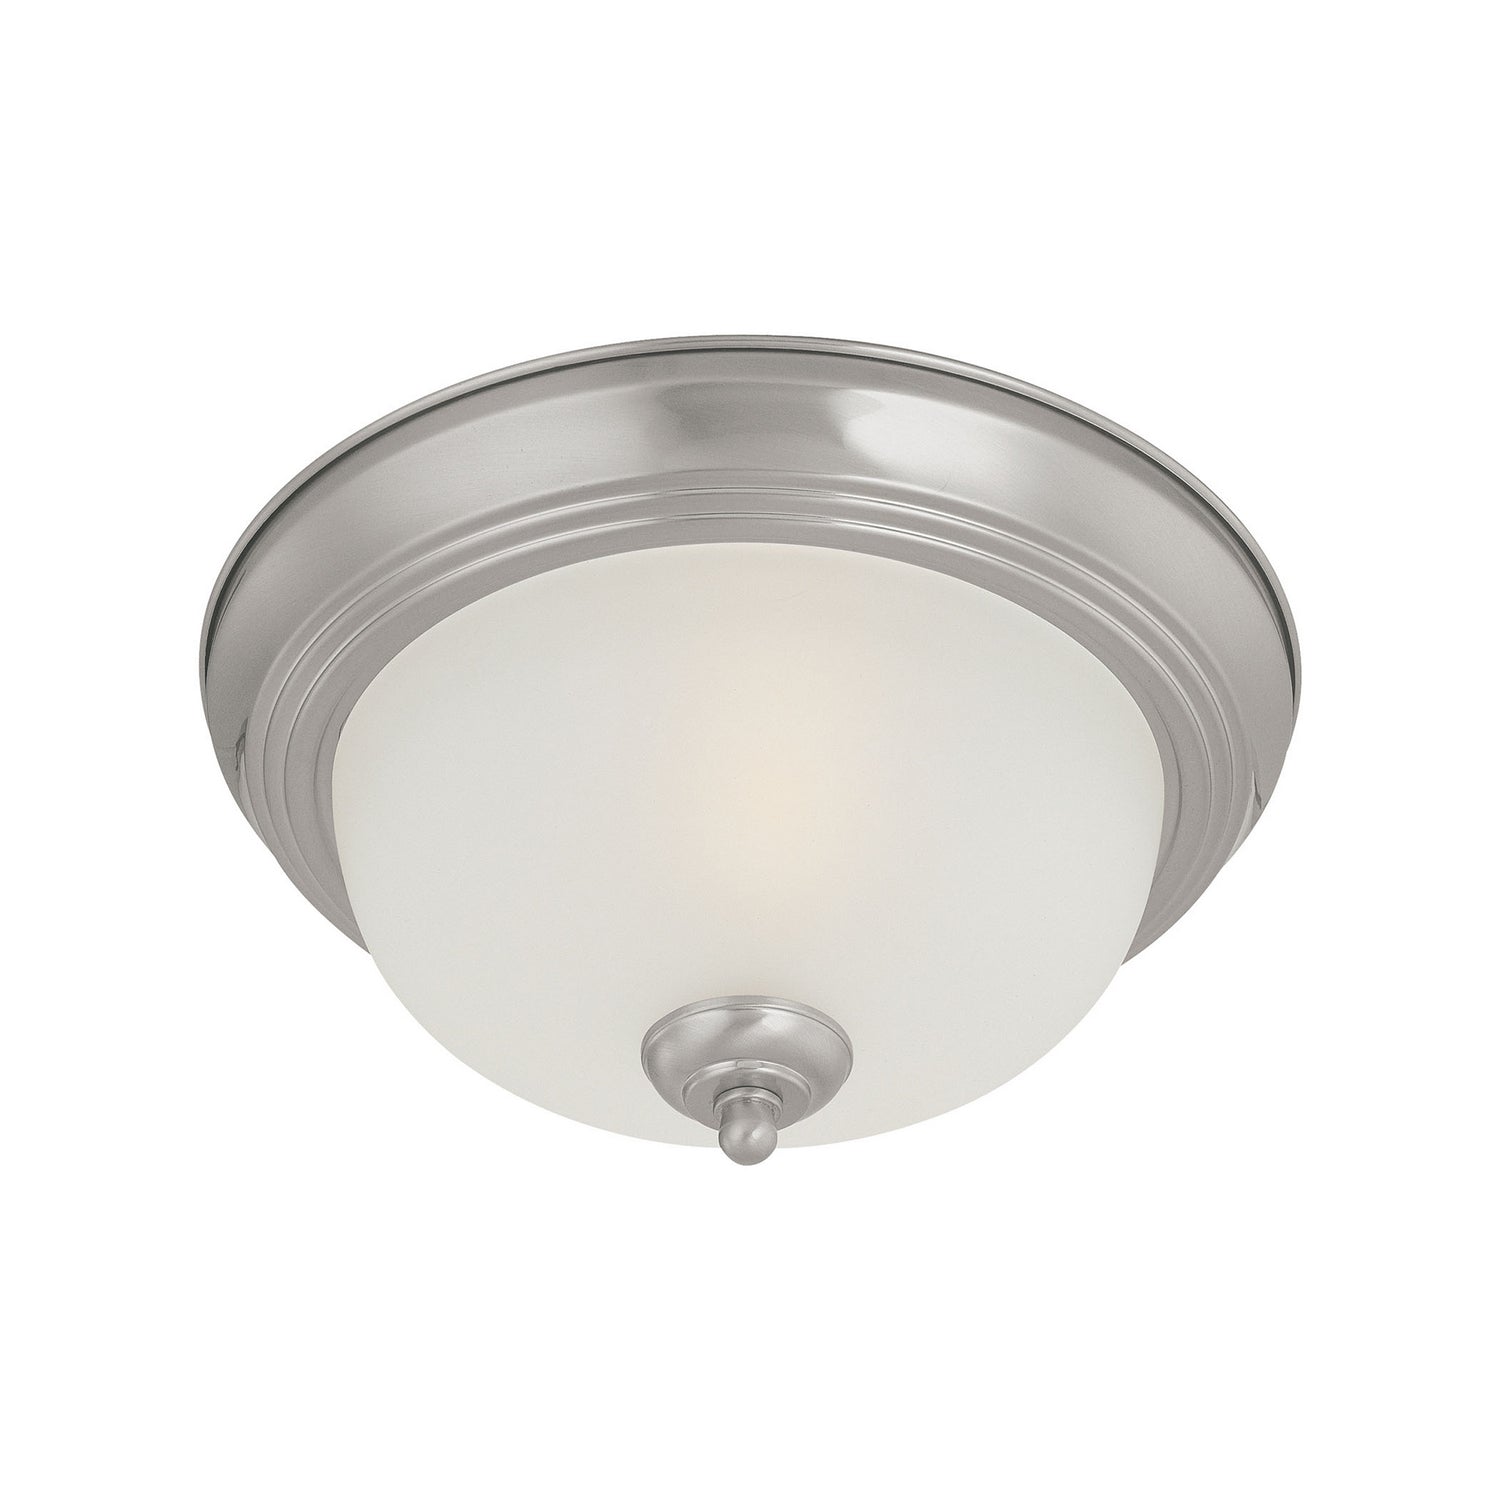 ELK Home - SL878178 - One Light Flush Mount - Ceiling Essentials - Brushed Nickel